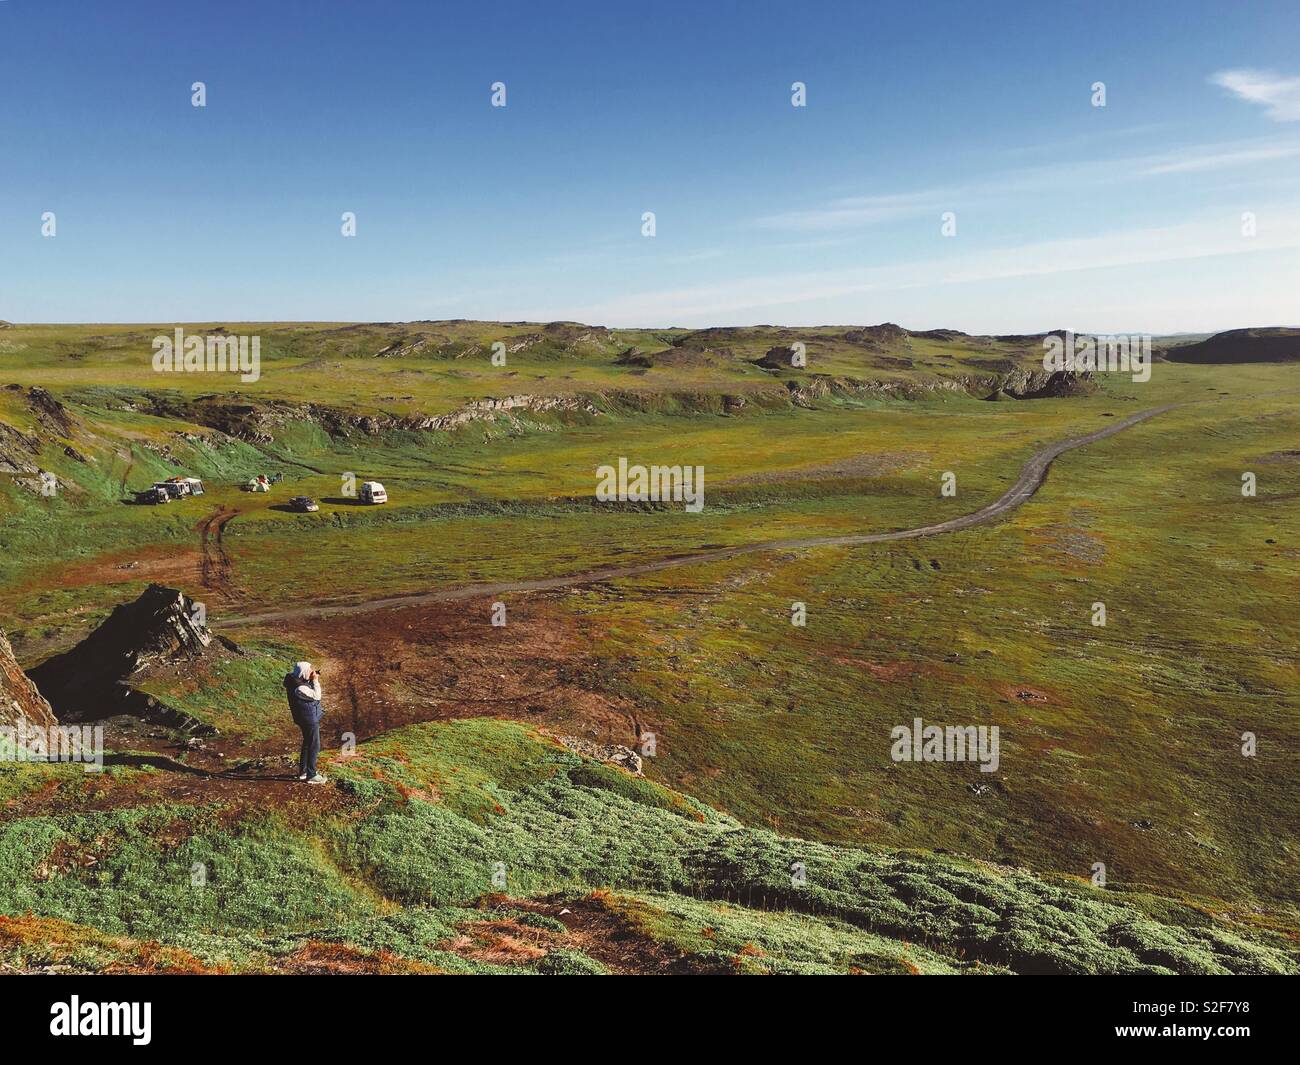 Tundra landscape in Russia Stock Photo